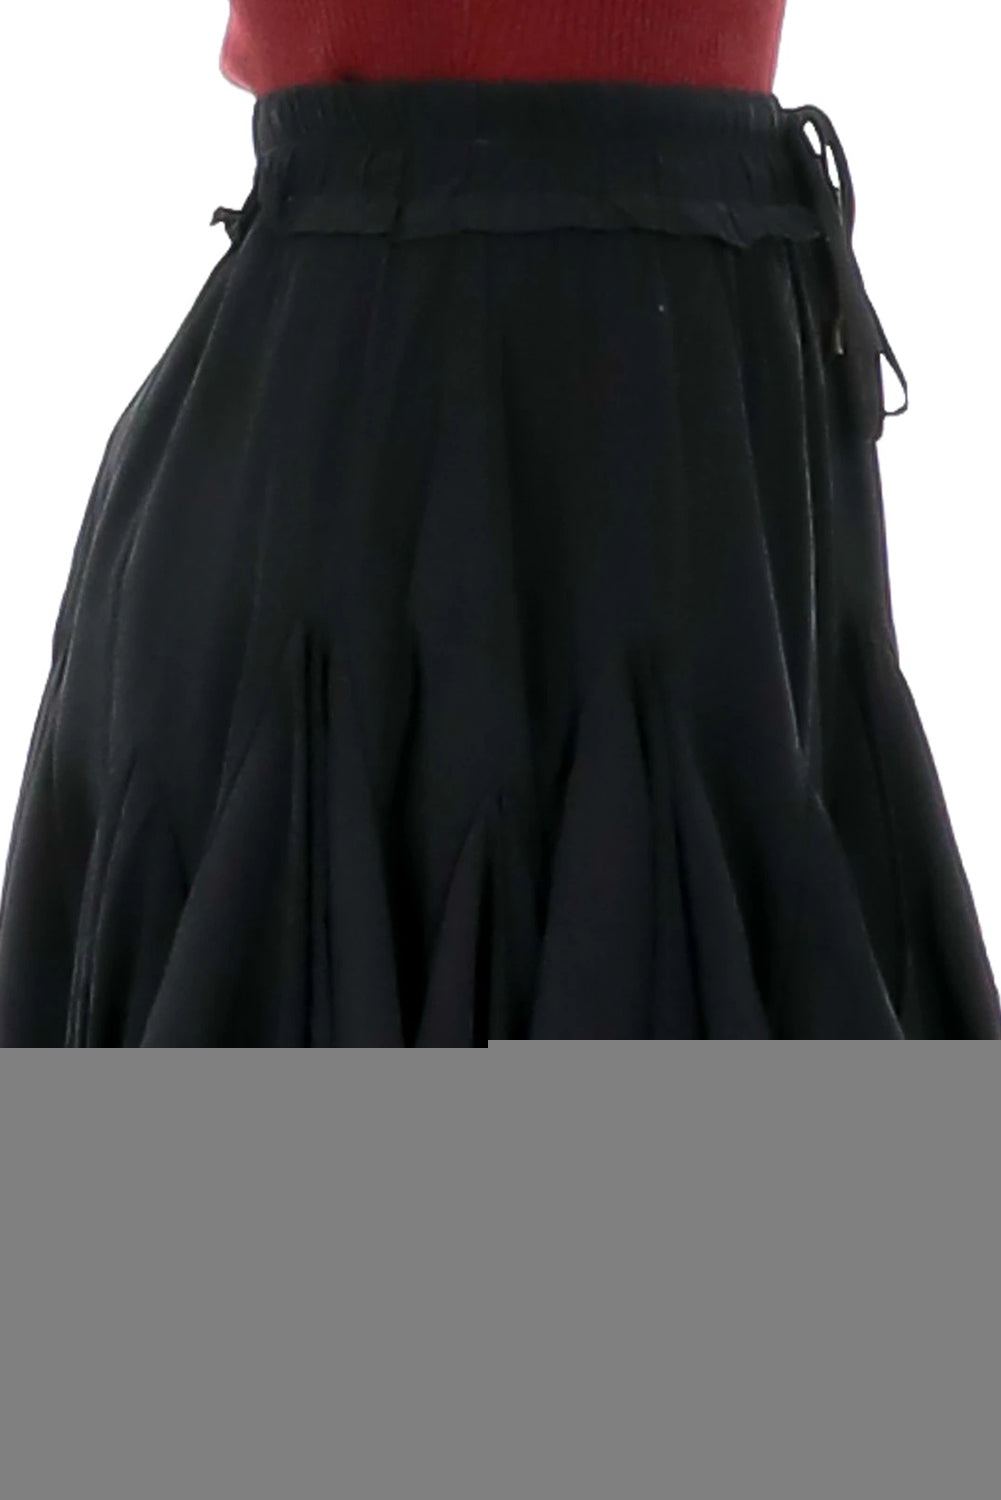 Minifalda plisada de mezclilla de cintura alta negra